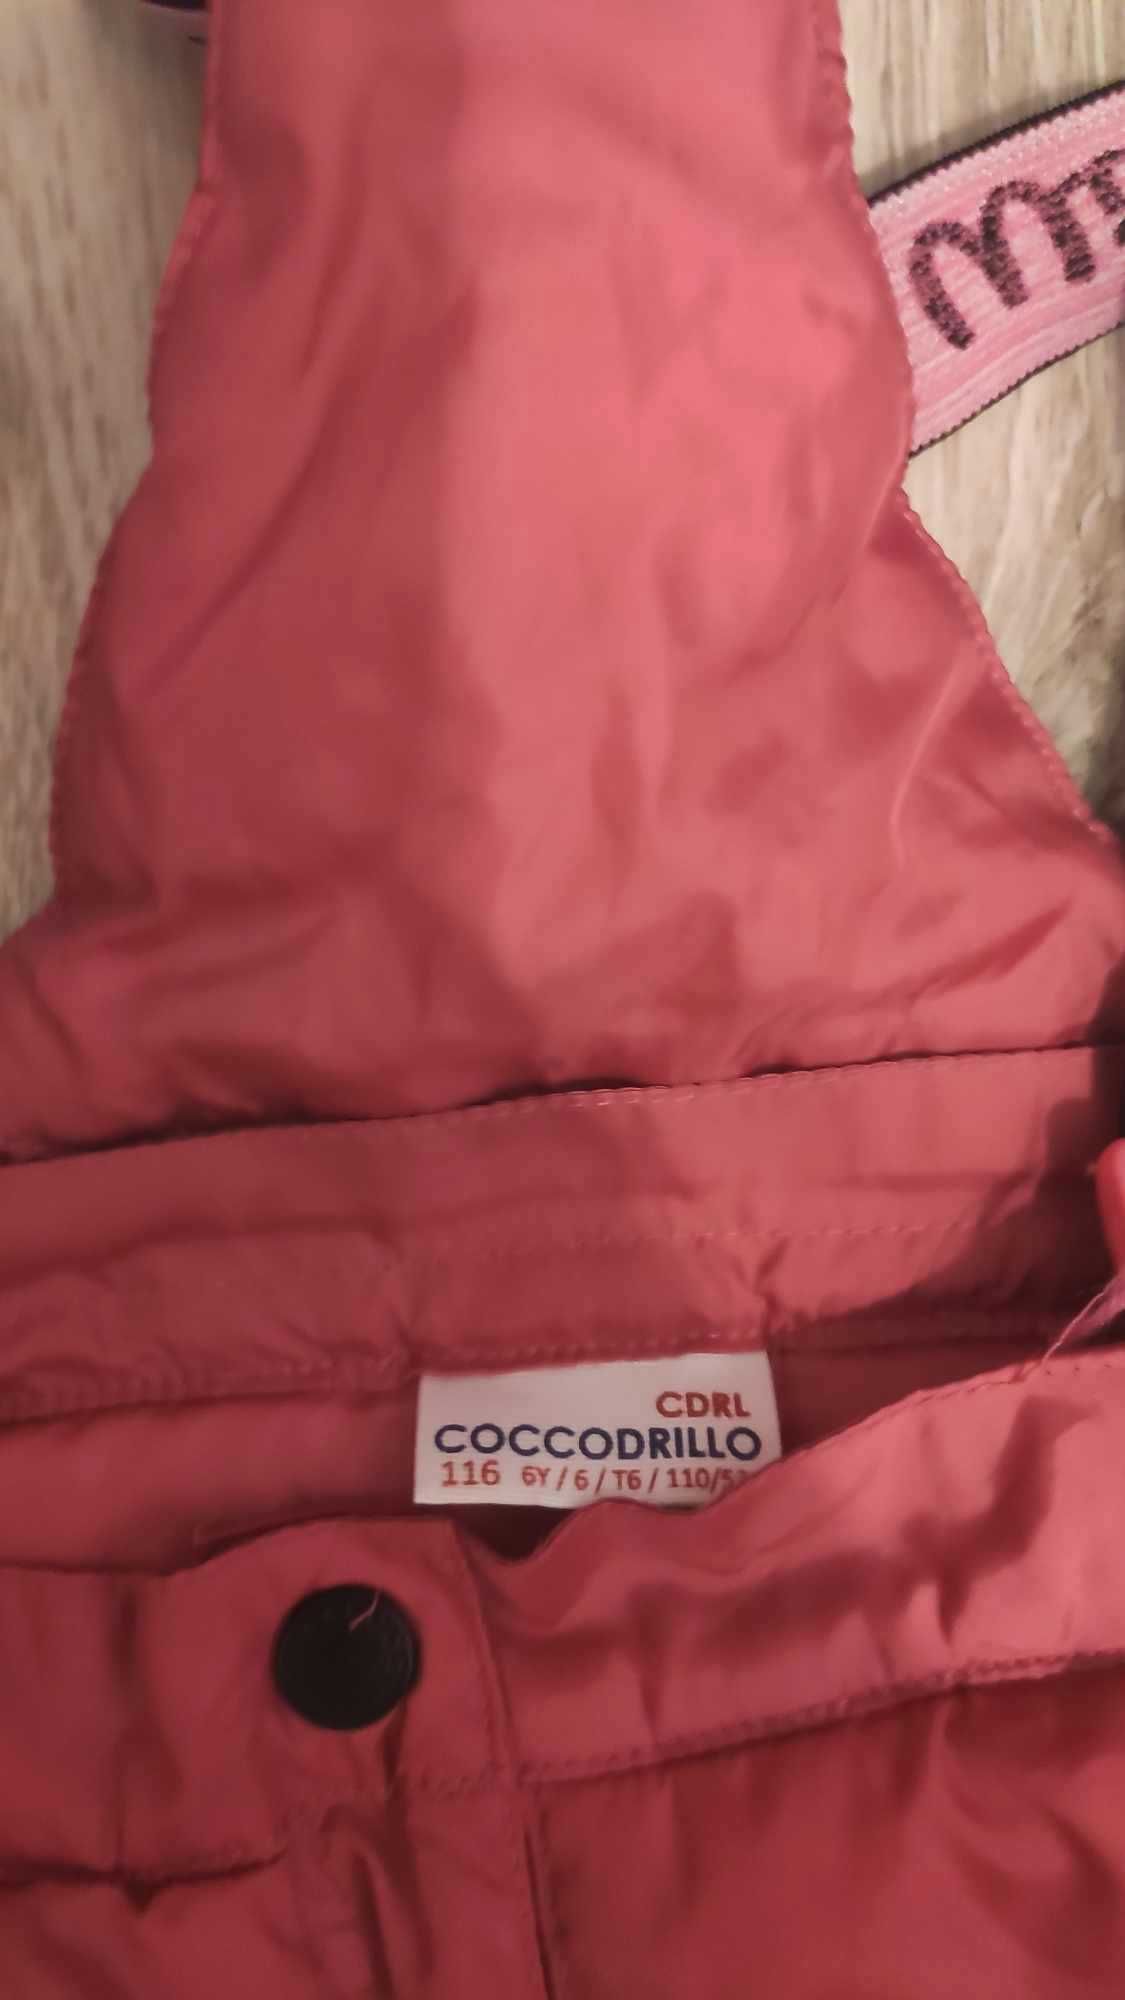 spodnie narciarskie dziewczęce rozmiar 116, Coccodrillo